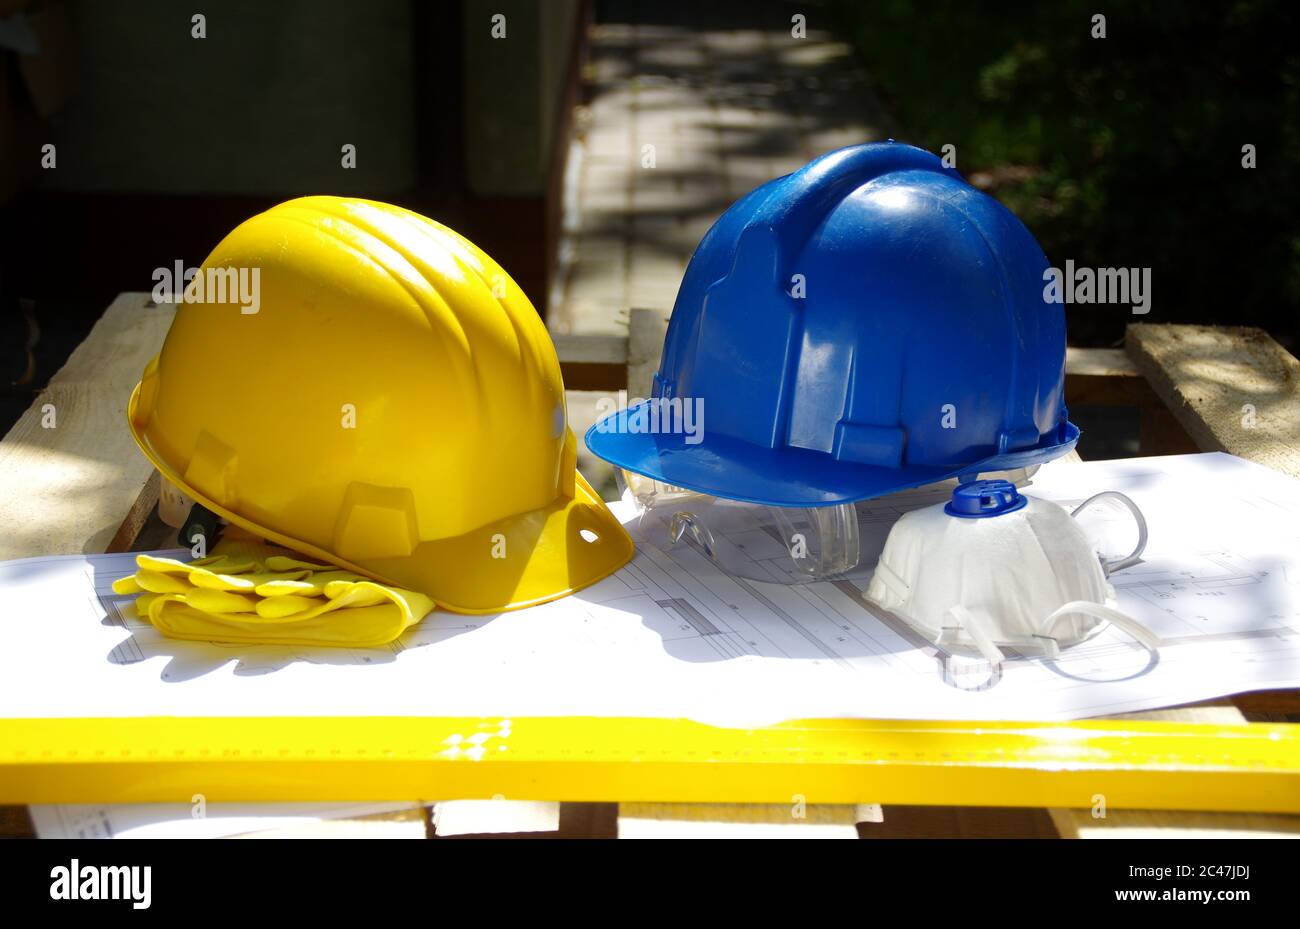 Elmetto protettivo giallo e blu. Dispositivi di protezione individuale. Sicurezza nel cantiere. Foto Stock